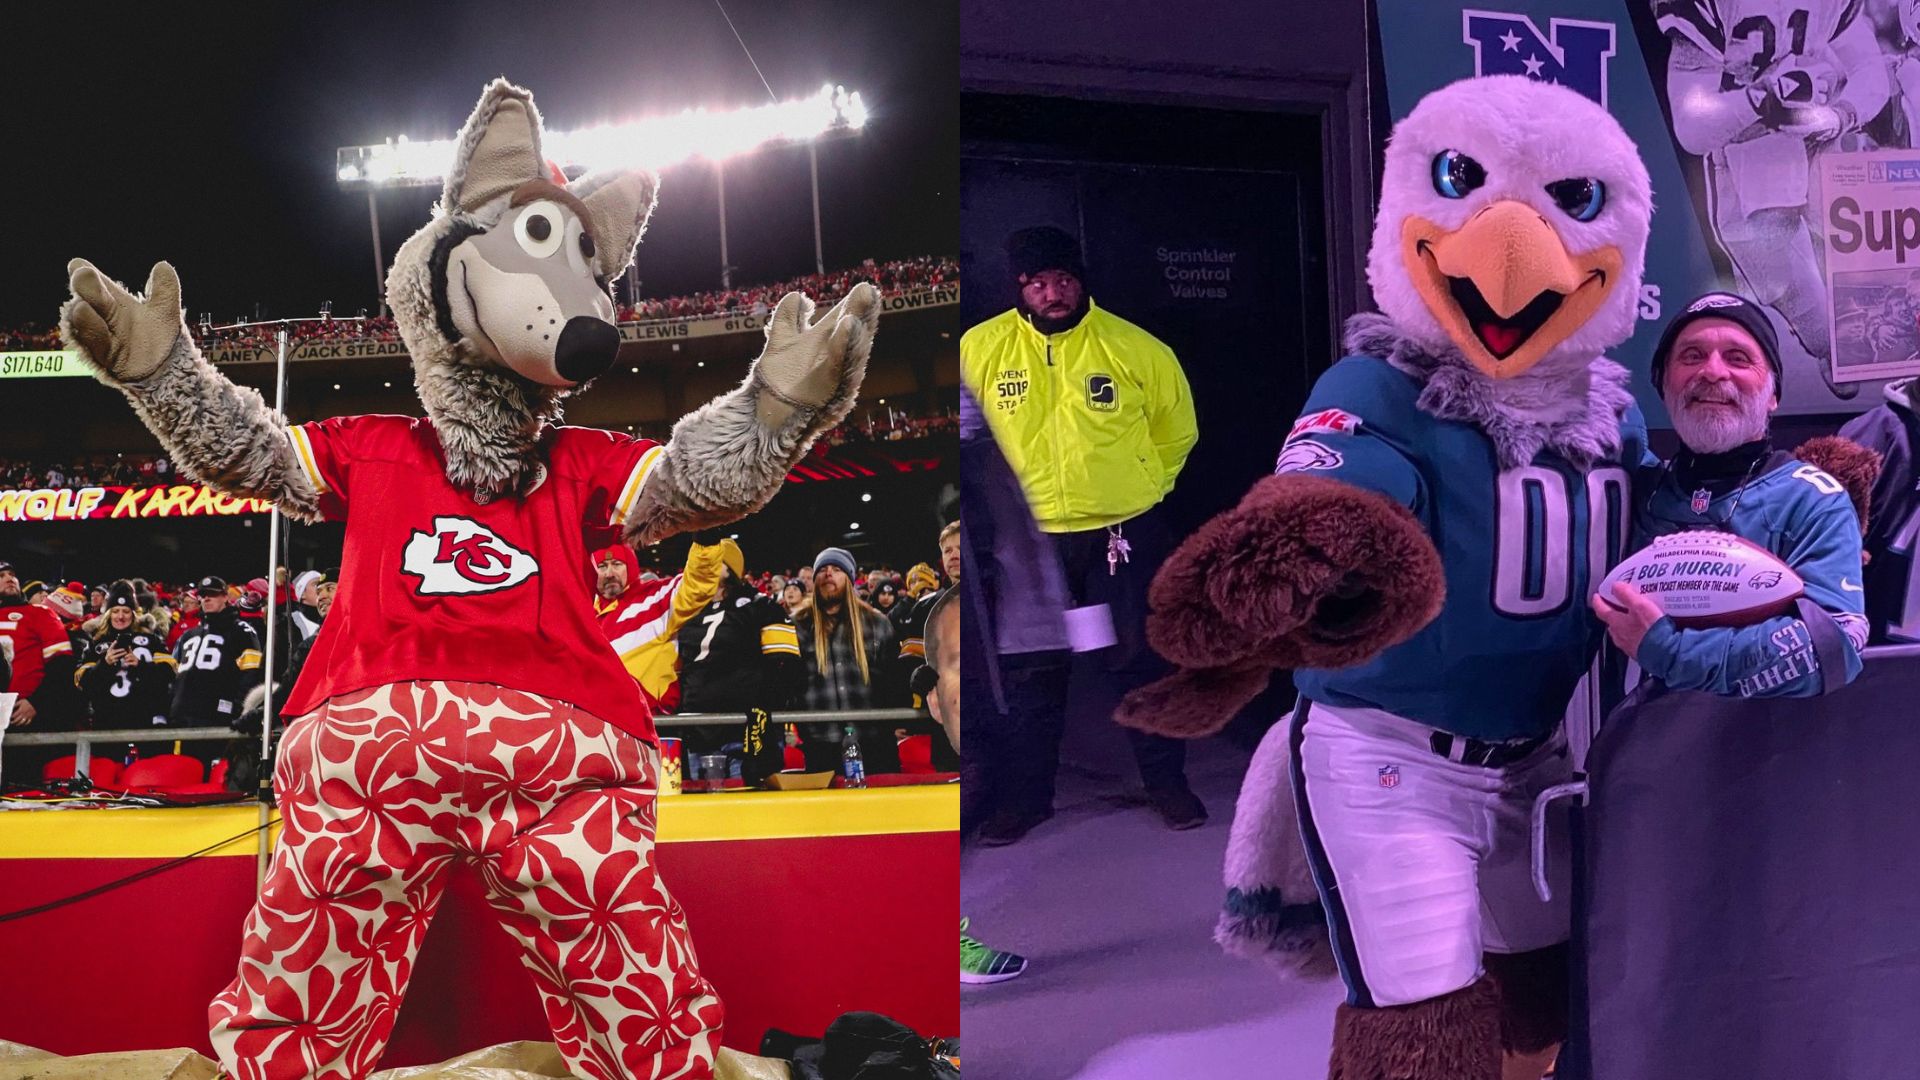 La mascota de los Chiefs inició a apoyar al equipo a finales de la década de 1980, mientras que Swoop de los Eagles comenzó a mediados de los 90 (Facebook KC Wolf y Philadelphia Eagles)